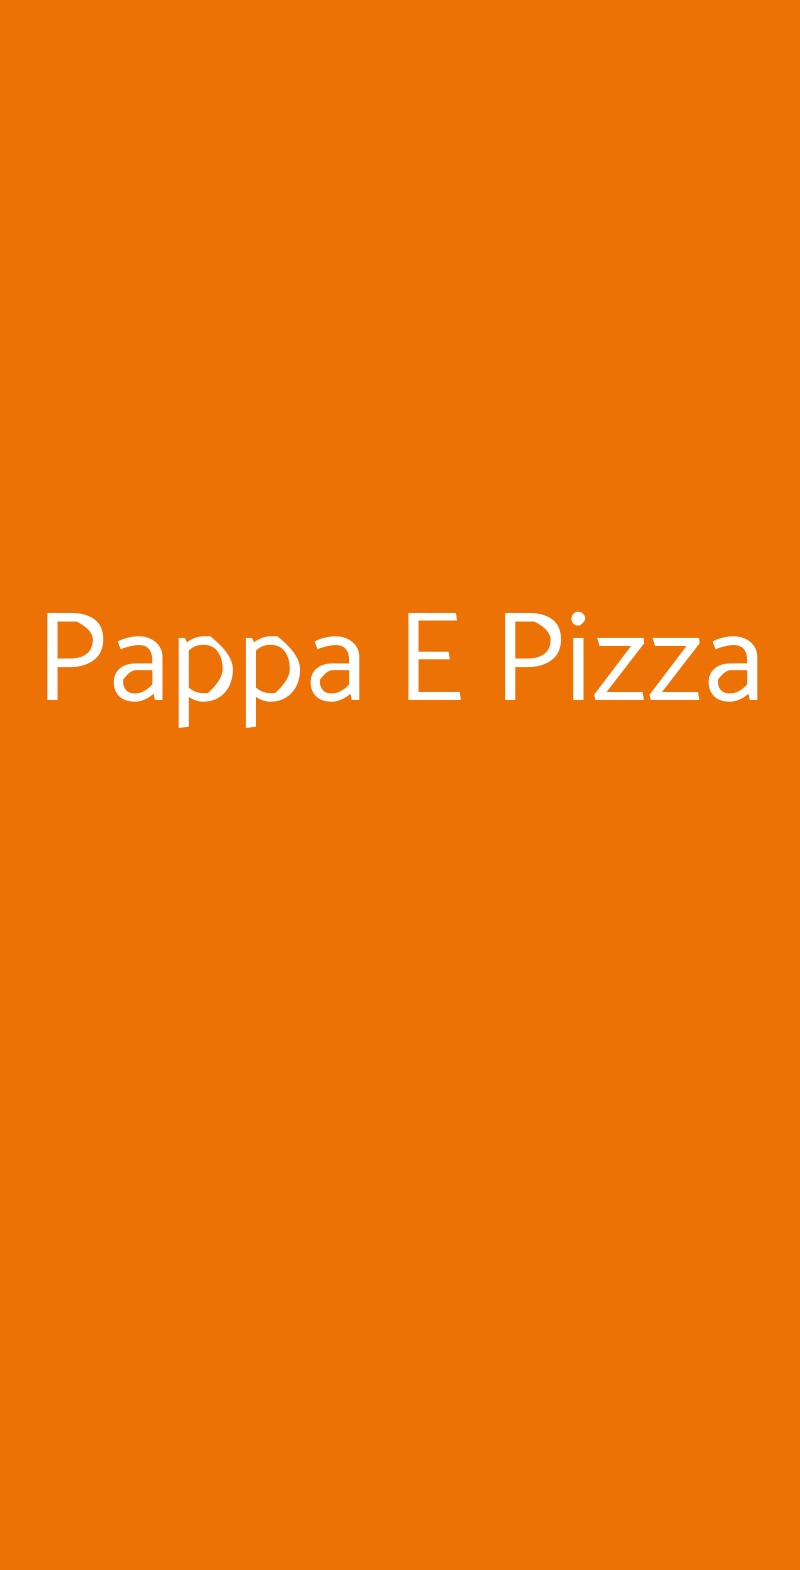 Pappa E Pizza Napoli menù 1 pagina